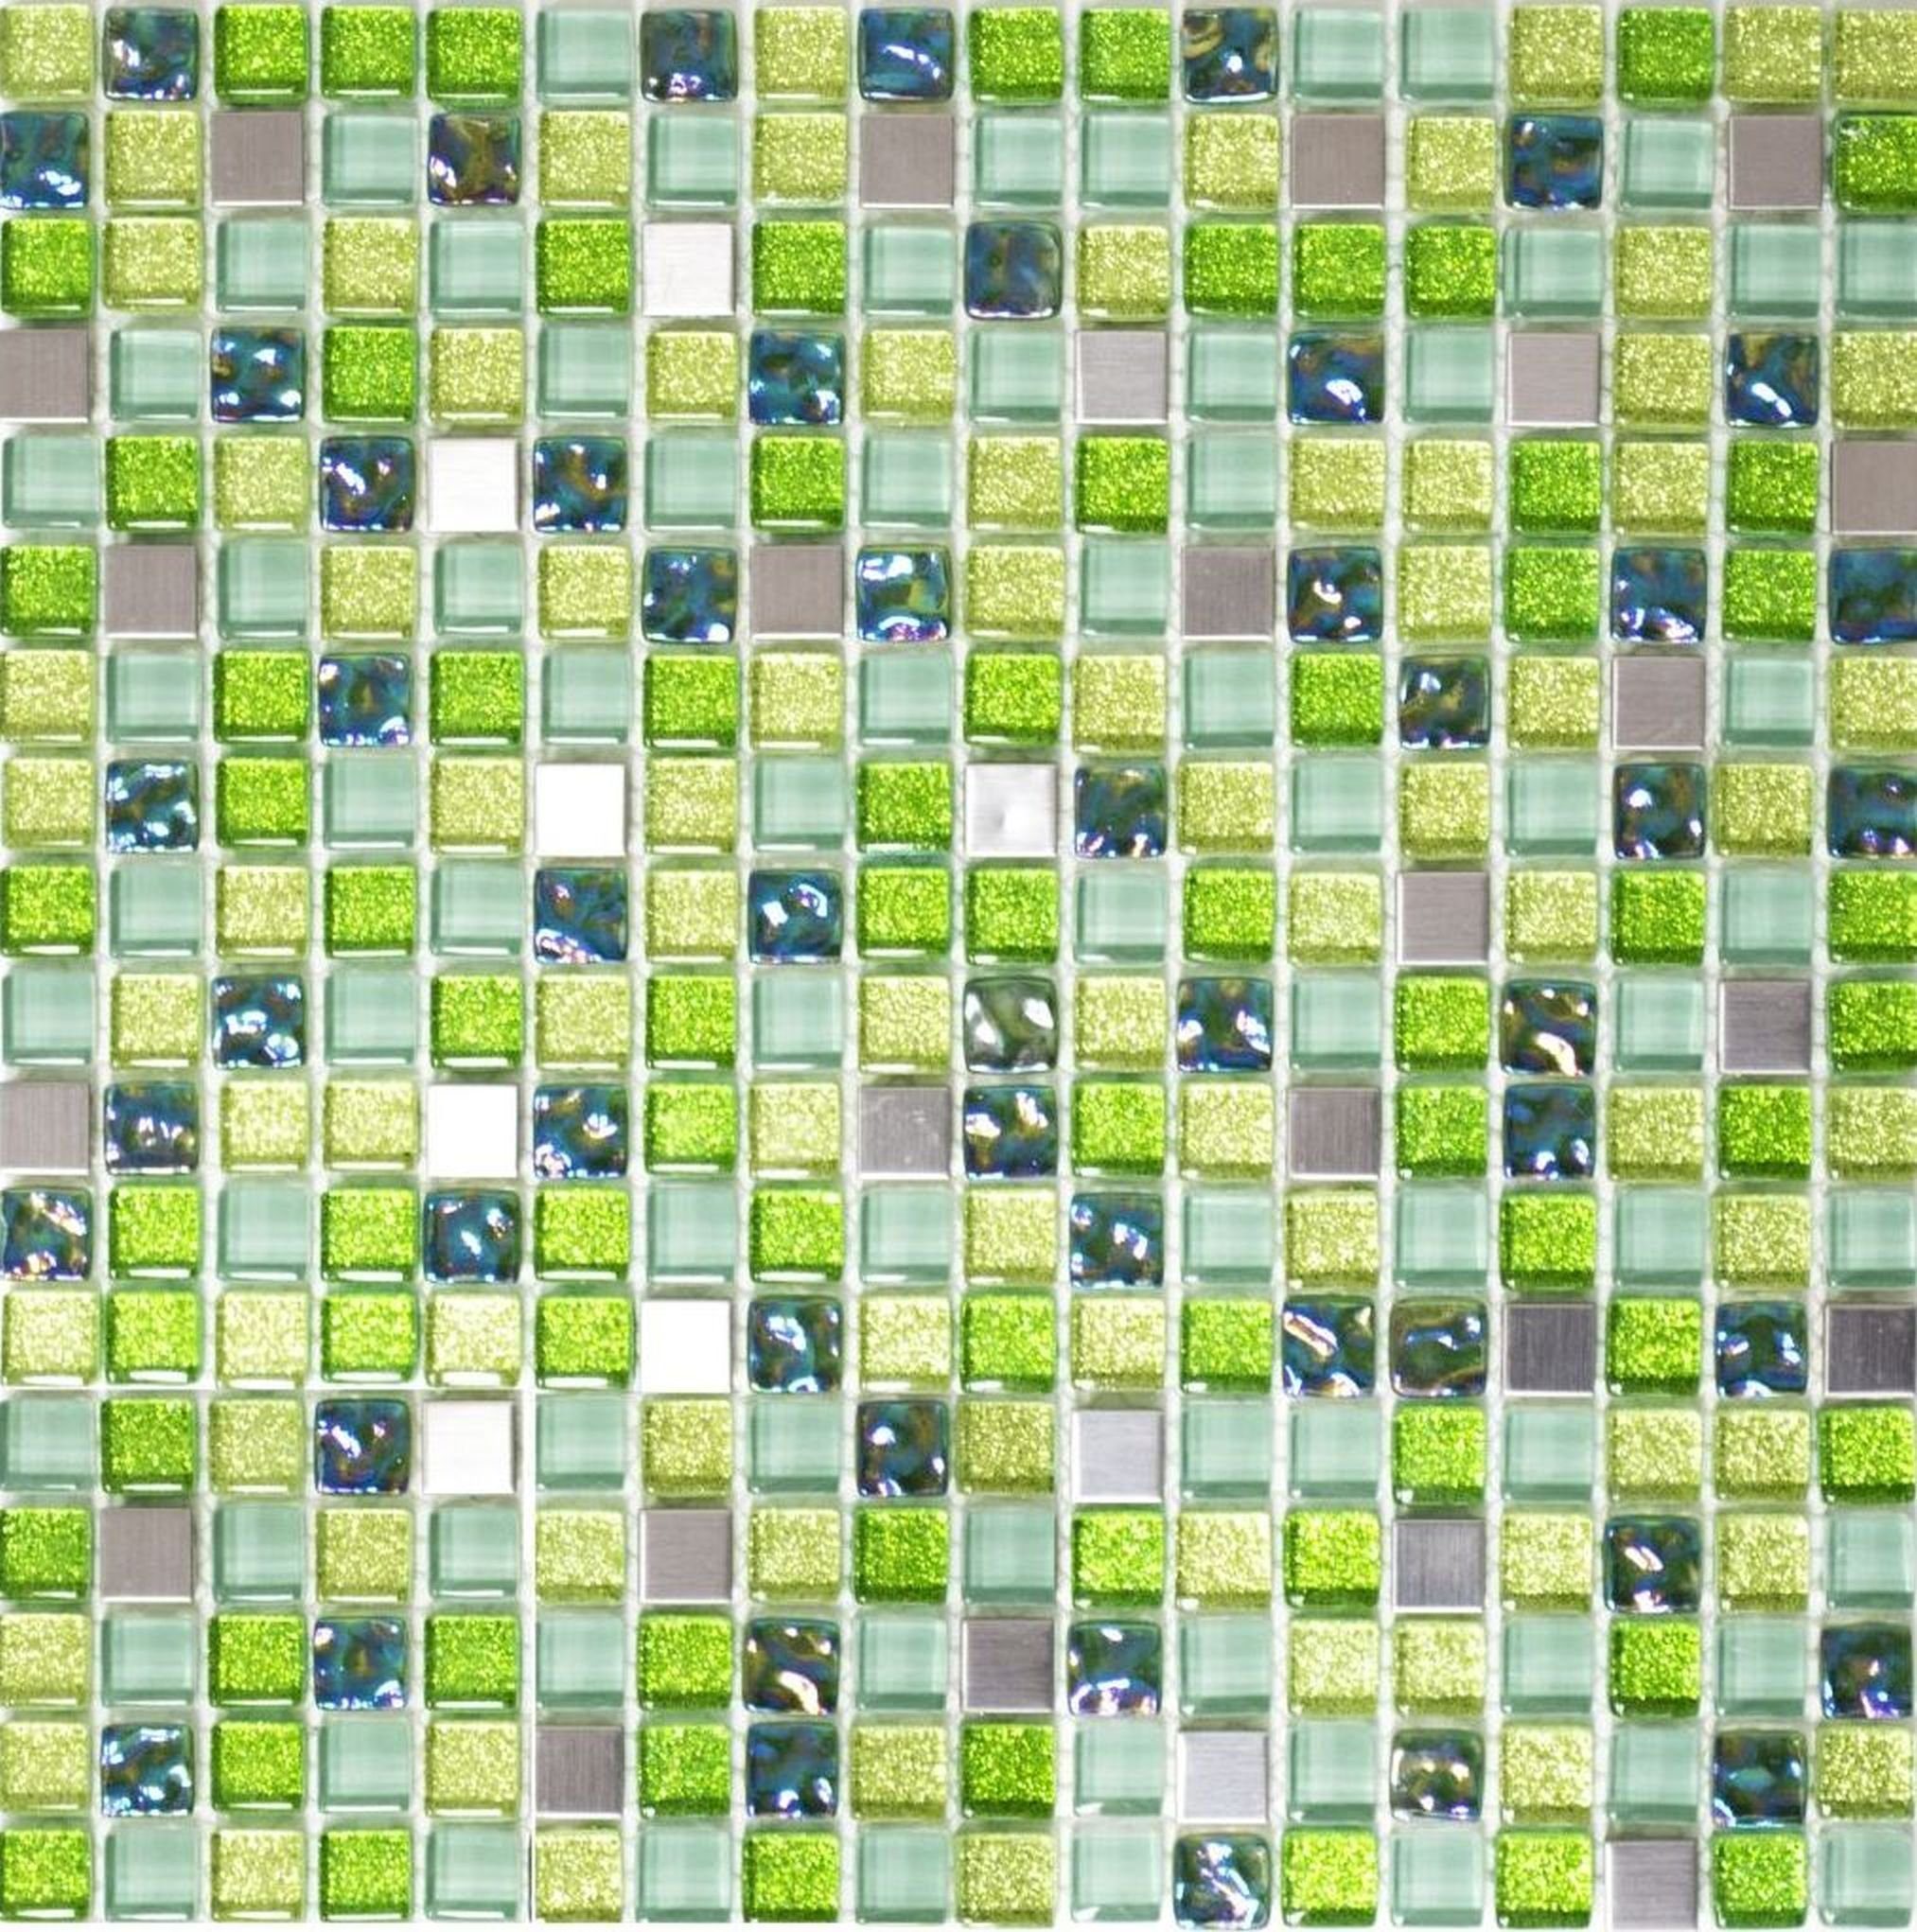 Mosani Mosaikfliesen Glasmosaik Mosaikfliese Edelstahl grün lime silber